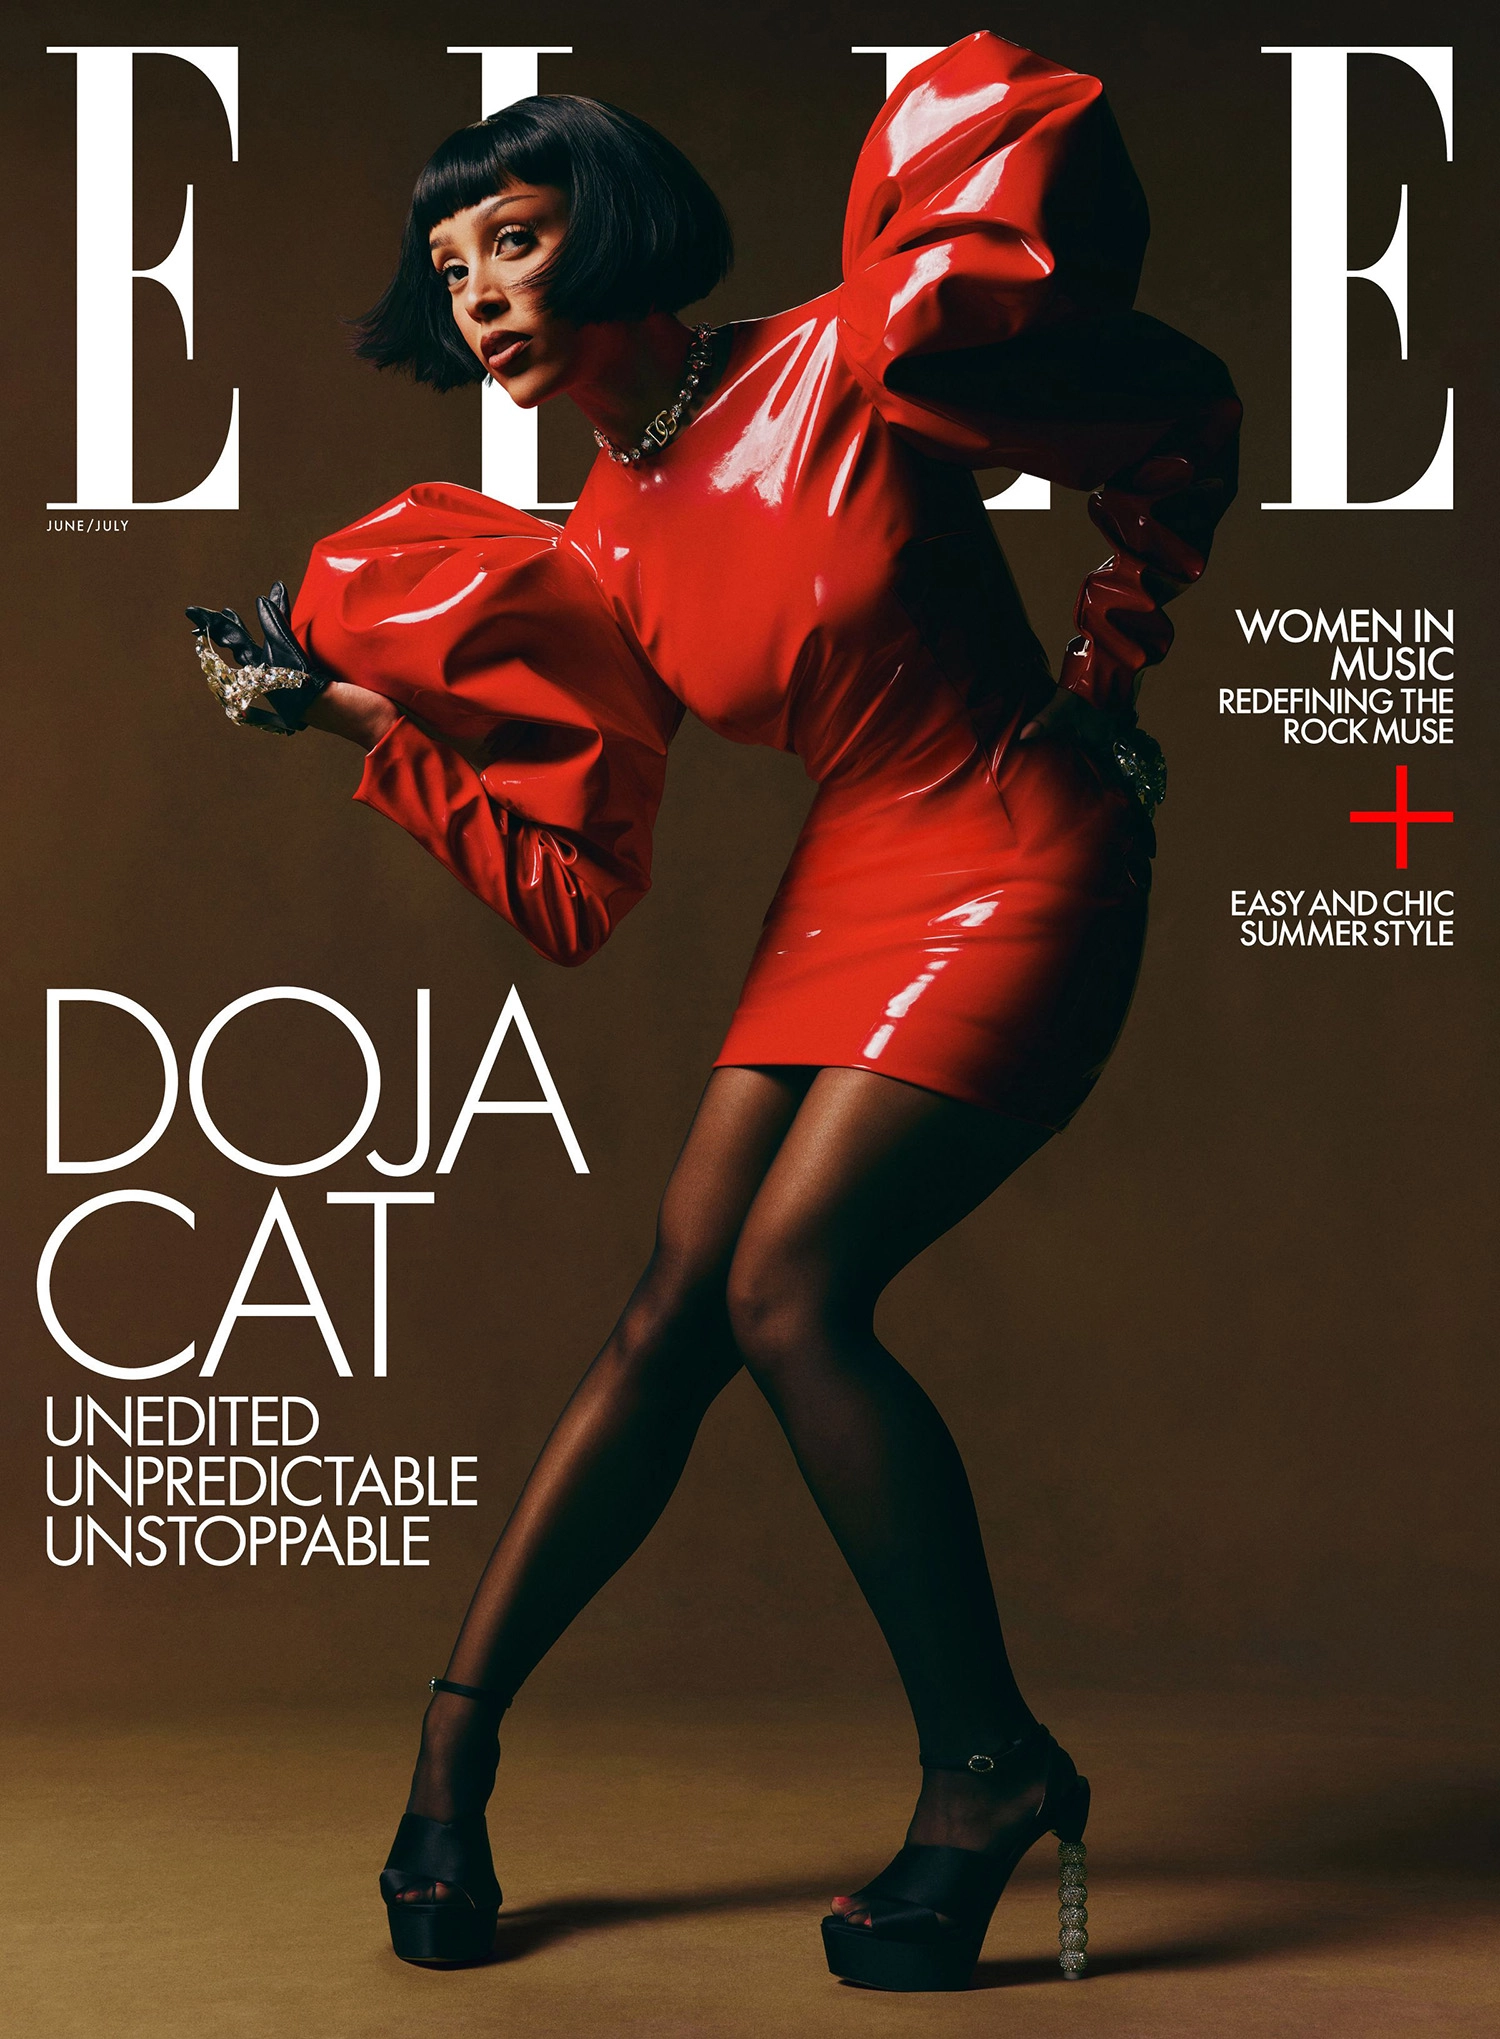 Doja Cat covers Elle US June July 2022 by Adrienne Raquel